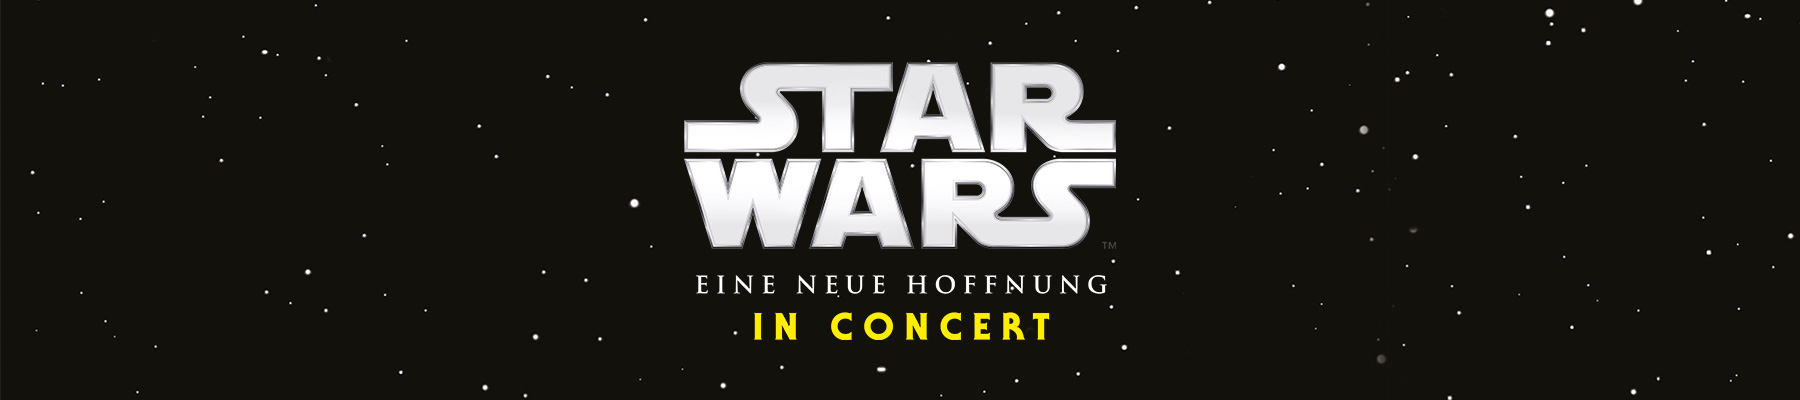 STAR WARS in Concert - Eine neue Hoffnung - Titelfoto